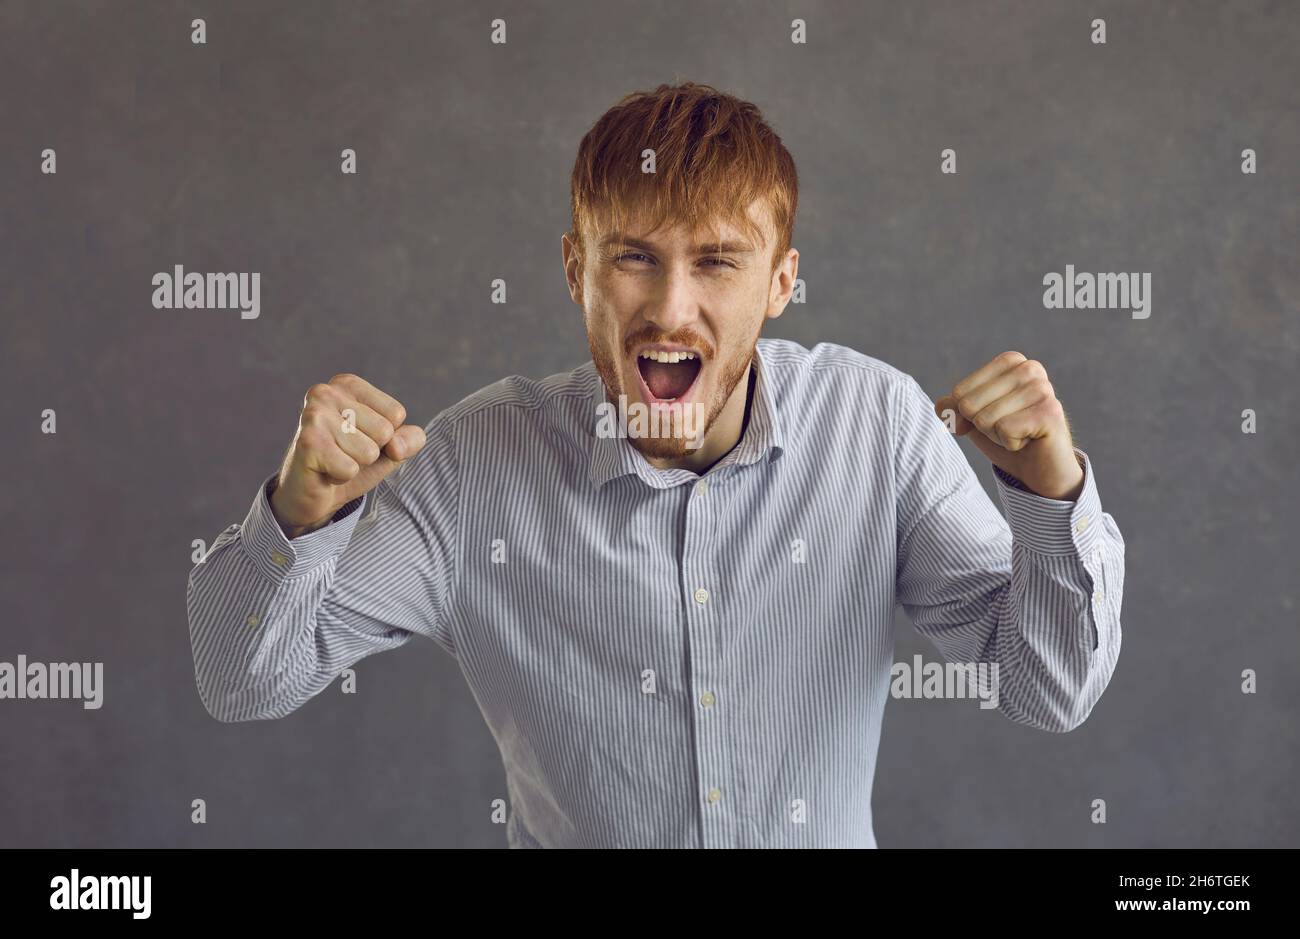 Urlando l'uomo arrabbiato che urlando quartreling studio headshot ritratto su sfondo grigio Foto Stock